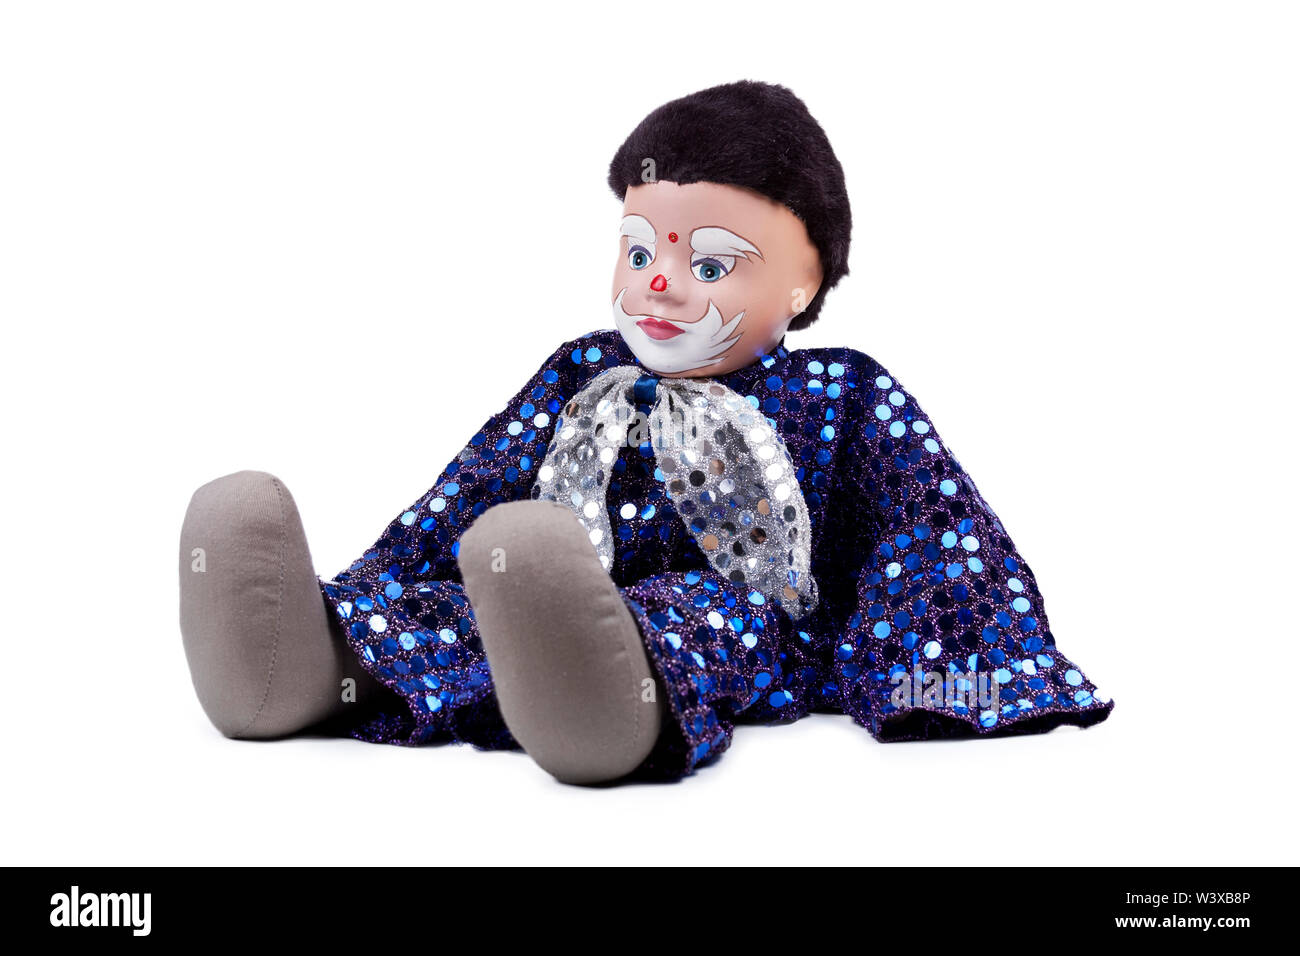 Eine kleine blaue schwarzhaarige Junge clown wie Puppe mit glänzenden Pailletten und eine Schleife um den Hals, sitzend darstellen. Auf weißen, detaillierte Marionette isoliert Stockfoto